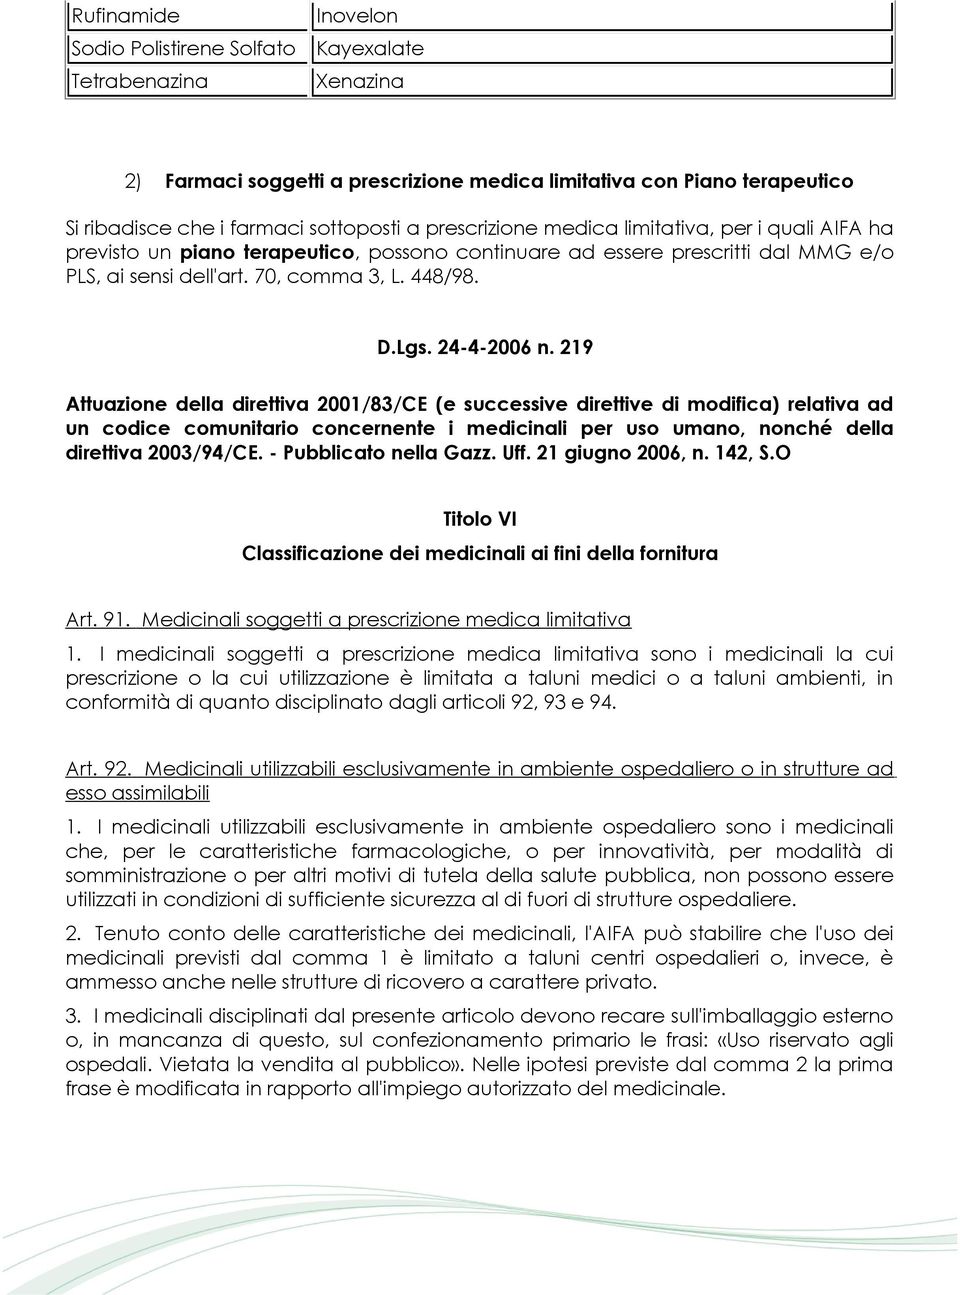 24-4-2006 n. 219 Attuazione della direttiva 2001/83/CE (e successive direttive di modifica) relativa ad un codice comunitario concernente i medicinali per uso umano, nonché della direttiva 2003/94/CE.